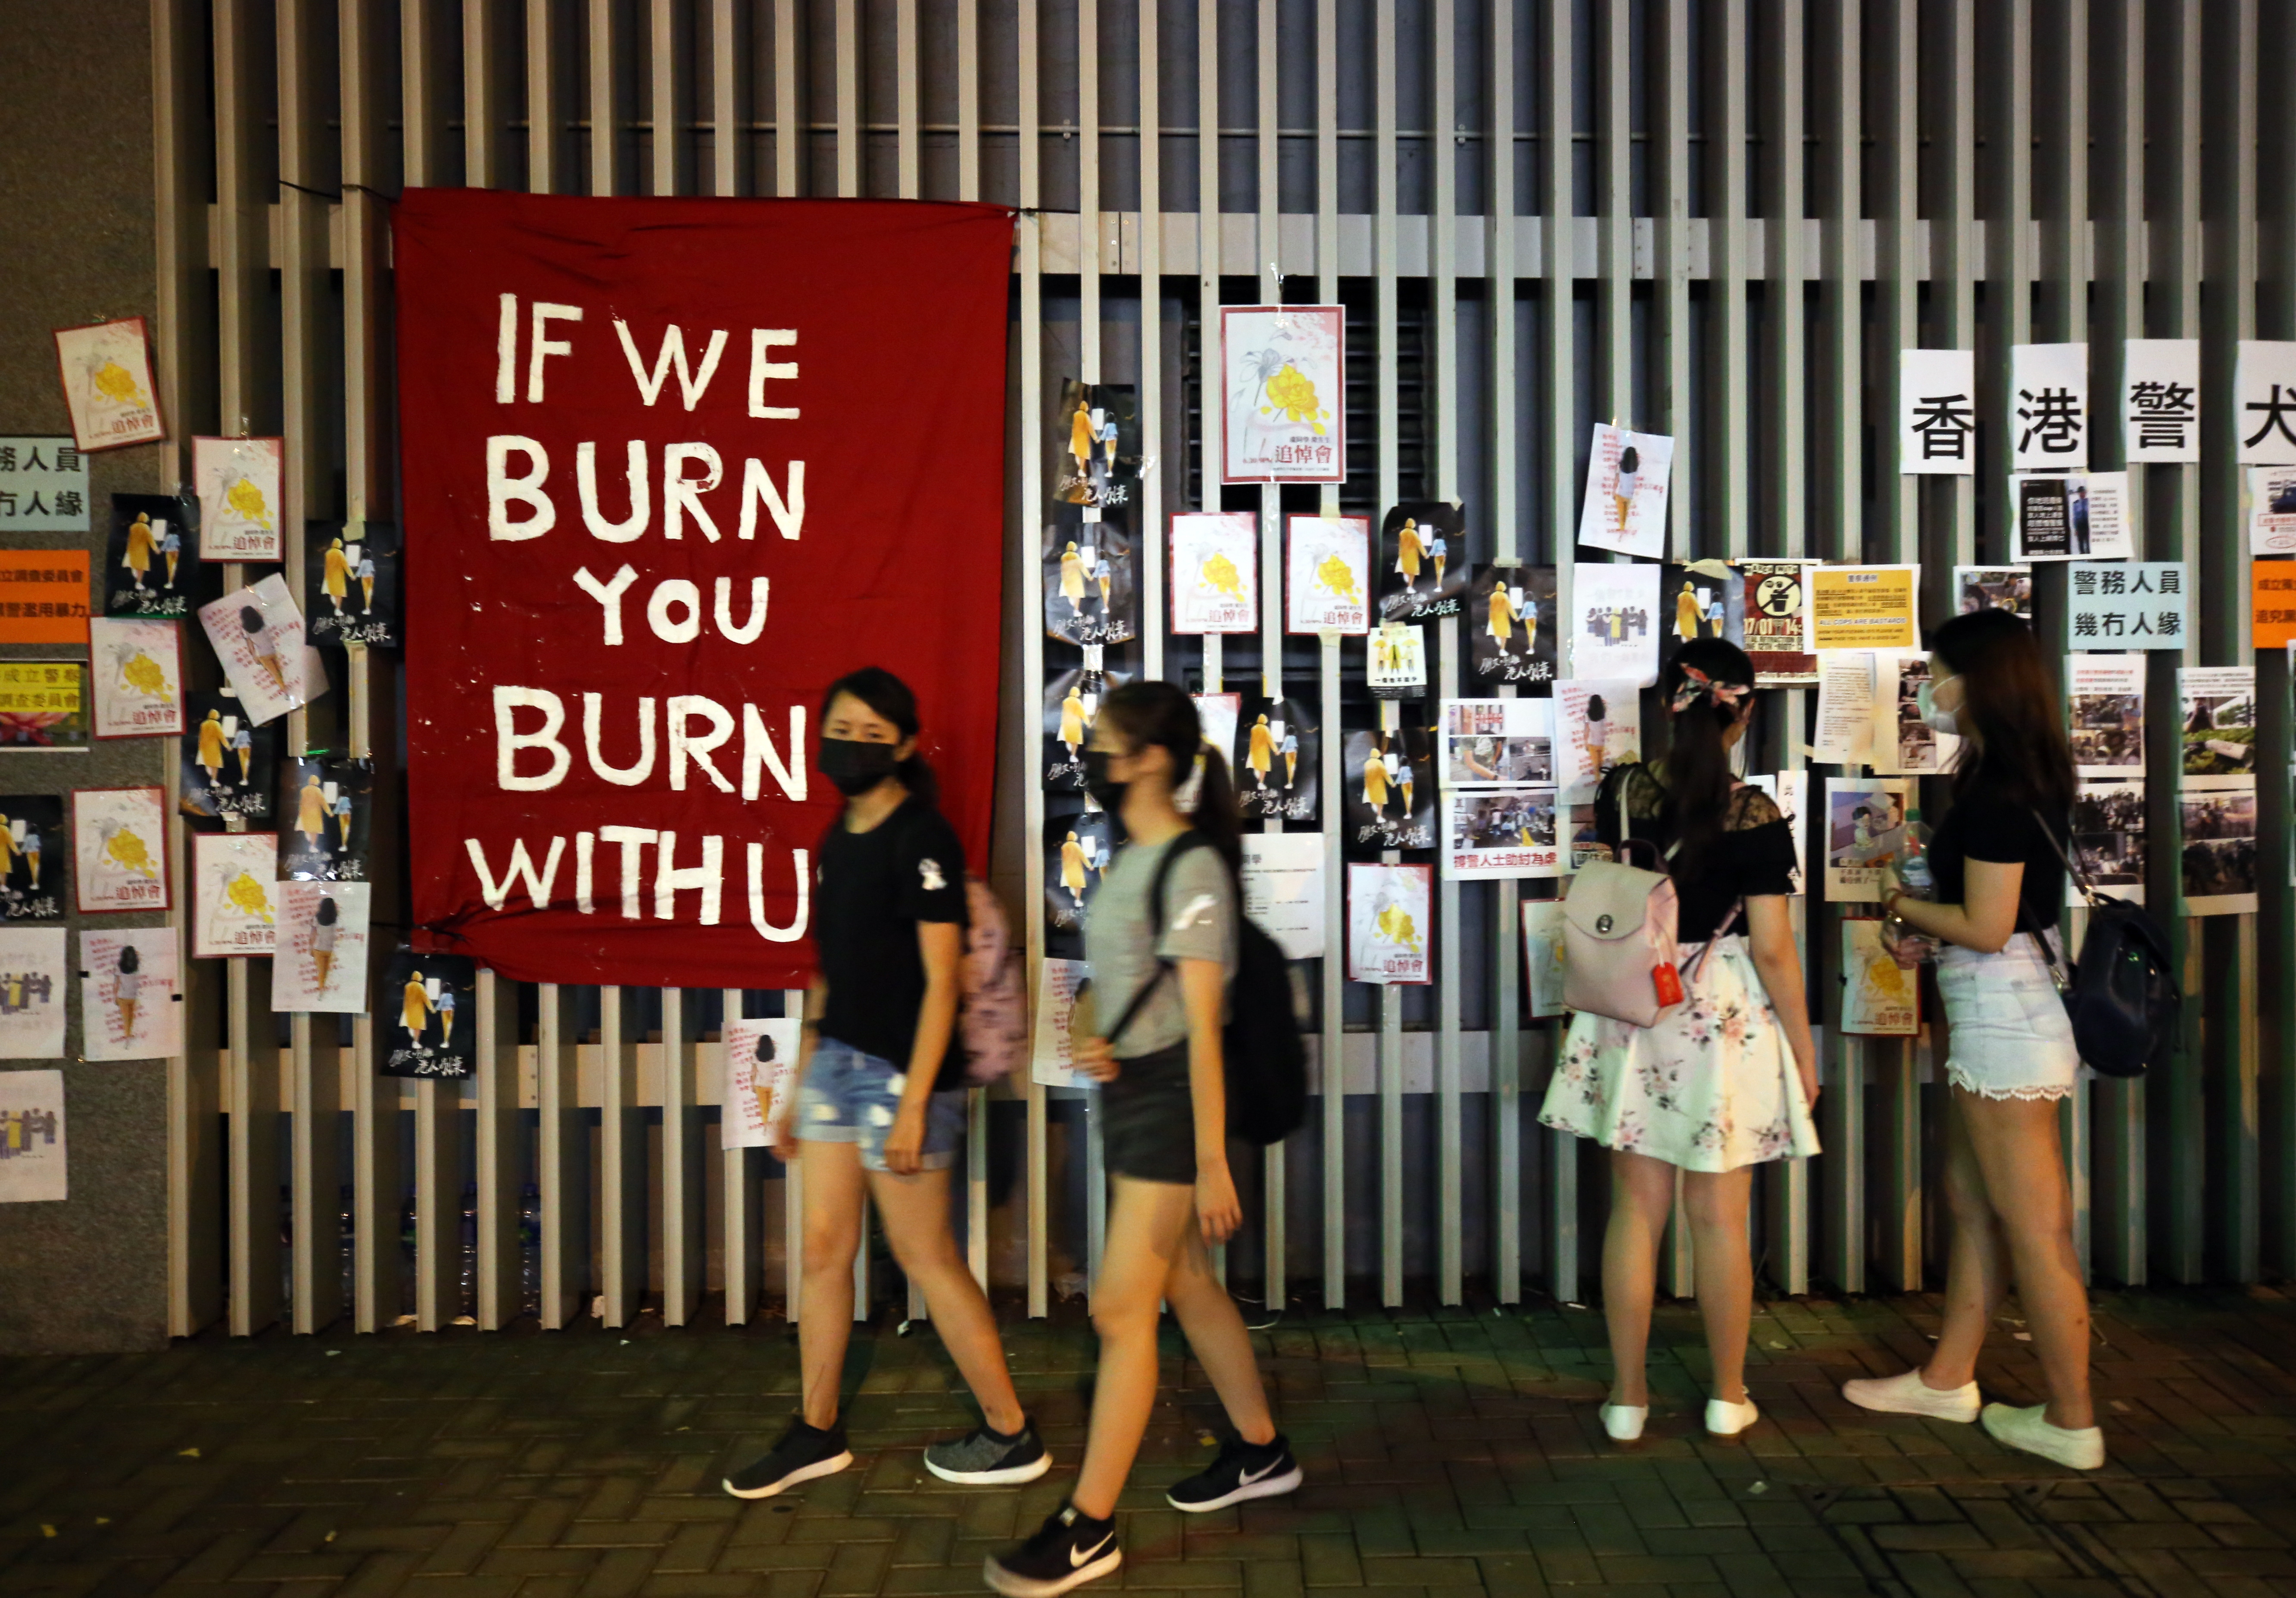 Демонстранти срещу пропекинското правителство нахлуха в сградата на парламента в полуавтономната територия Хонконг в понеделник вечерта и развяха знамето от епохата на британския колониализъм, след като щурмуваха зданието в деня на годишнината от връщането на територията на Китай.